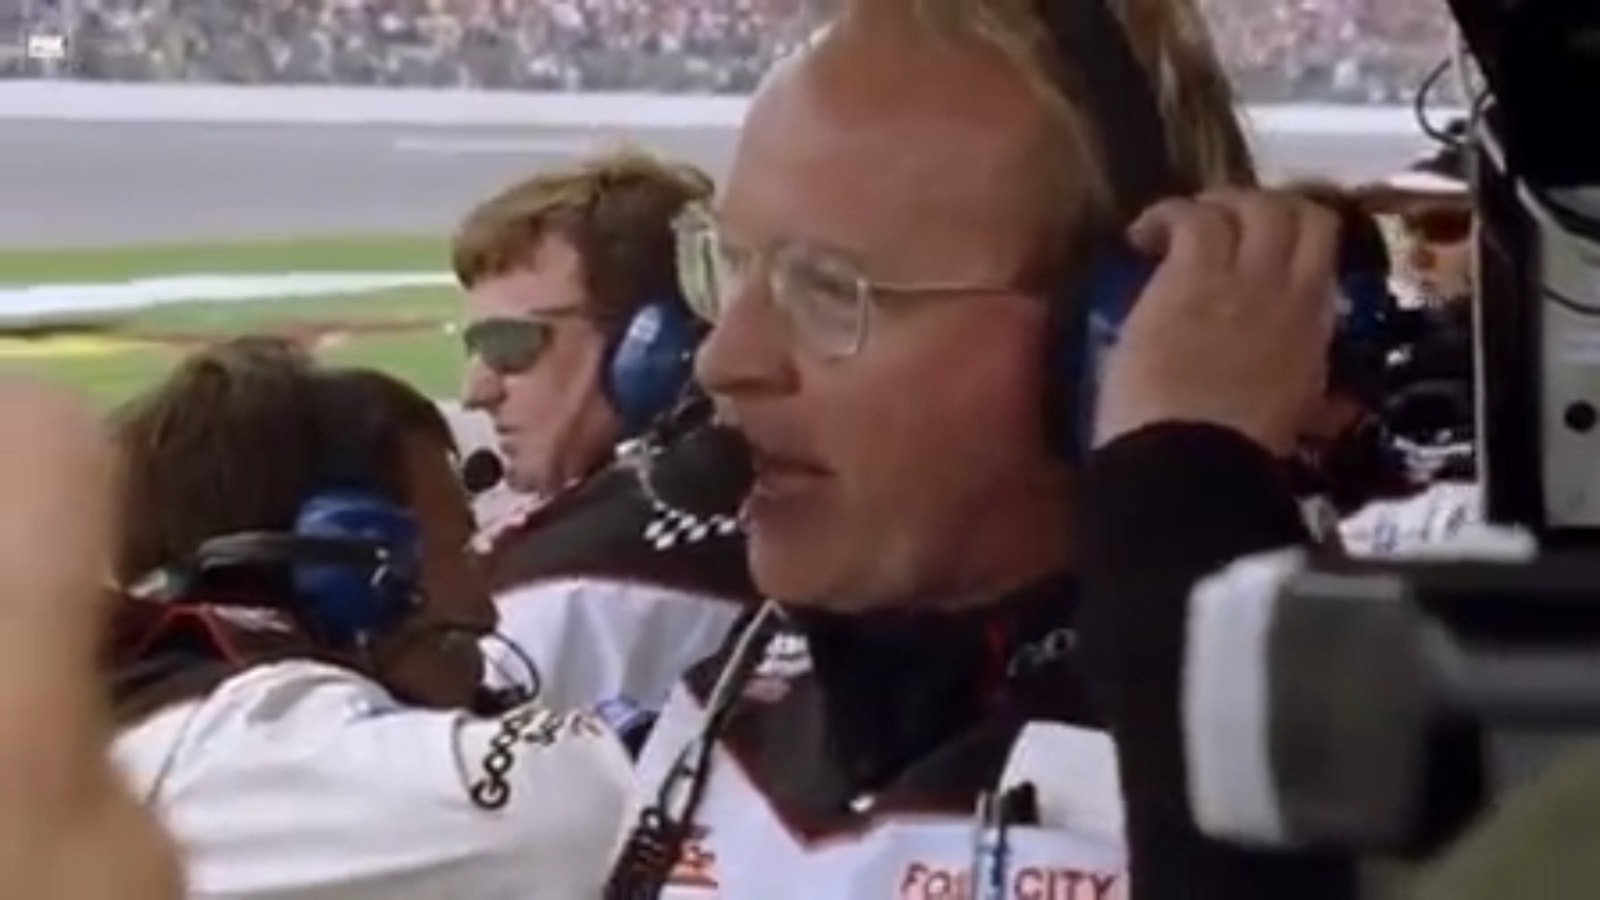 Dale Earnhardt's legendary win in the 1998 Daytona 500